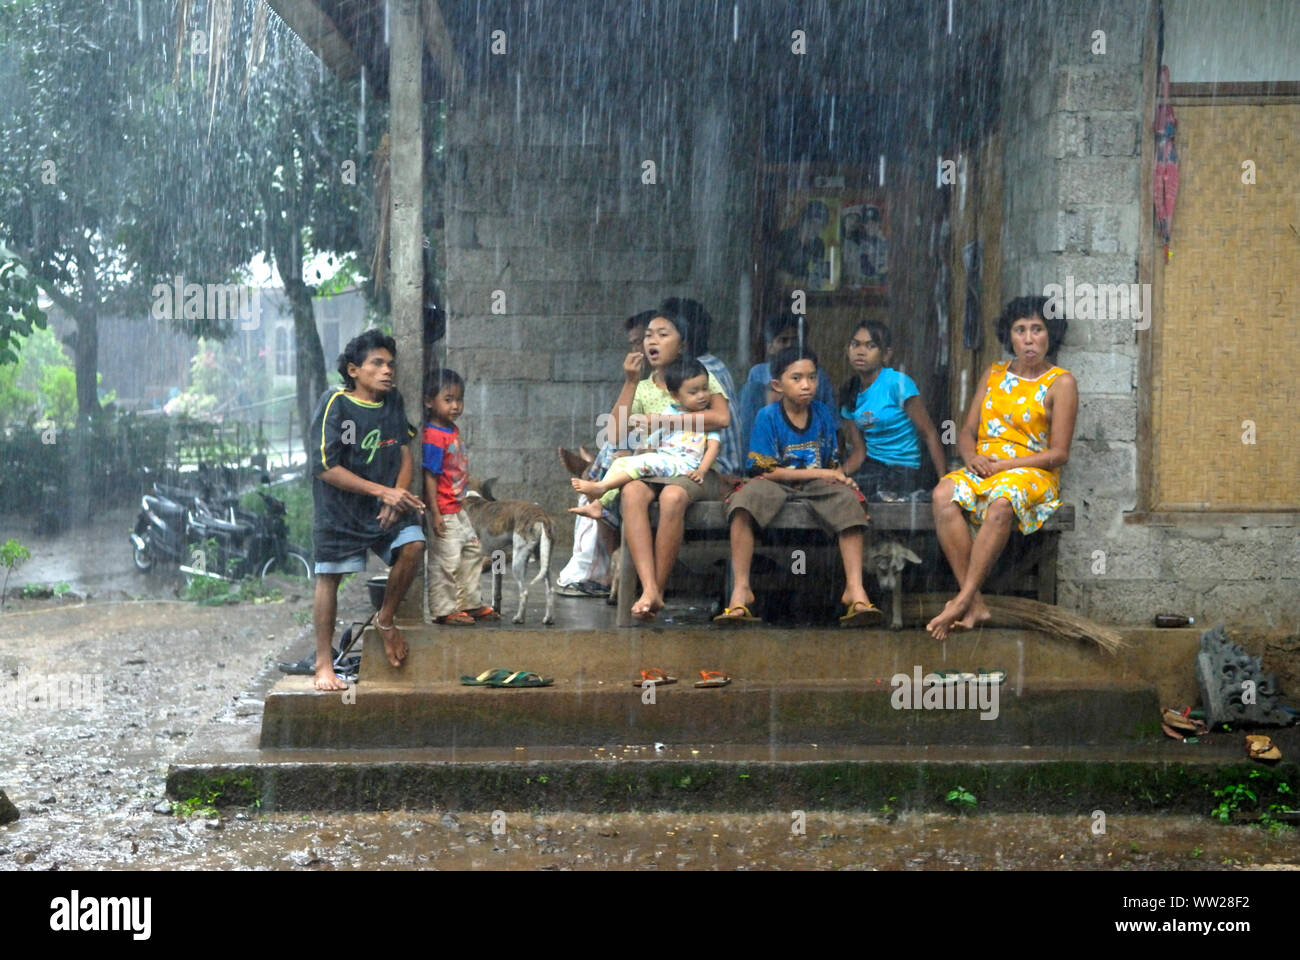 Bali, starker Regen ländliche Gemeinde Lovina. 2000s. Frauen und Familienmitglieder, die bei sehr starkem Regen auf der Veranda ihres Hauses sitzen. Indonesia Lovina. Insel Bali HOMER SYKES Stockfoto